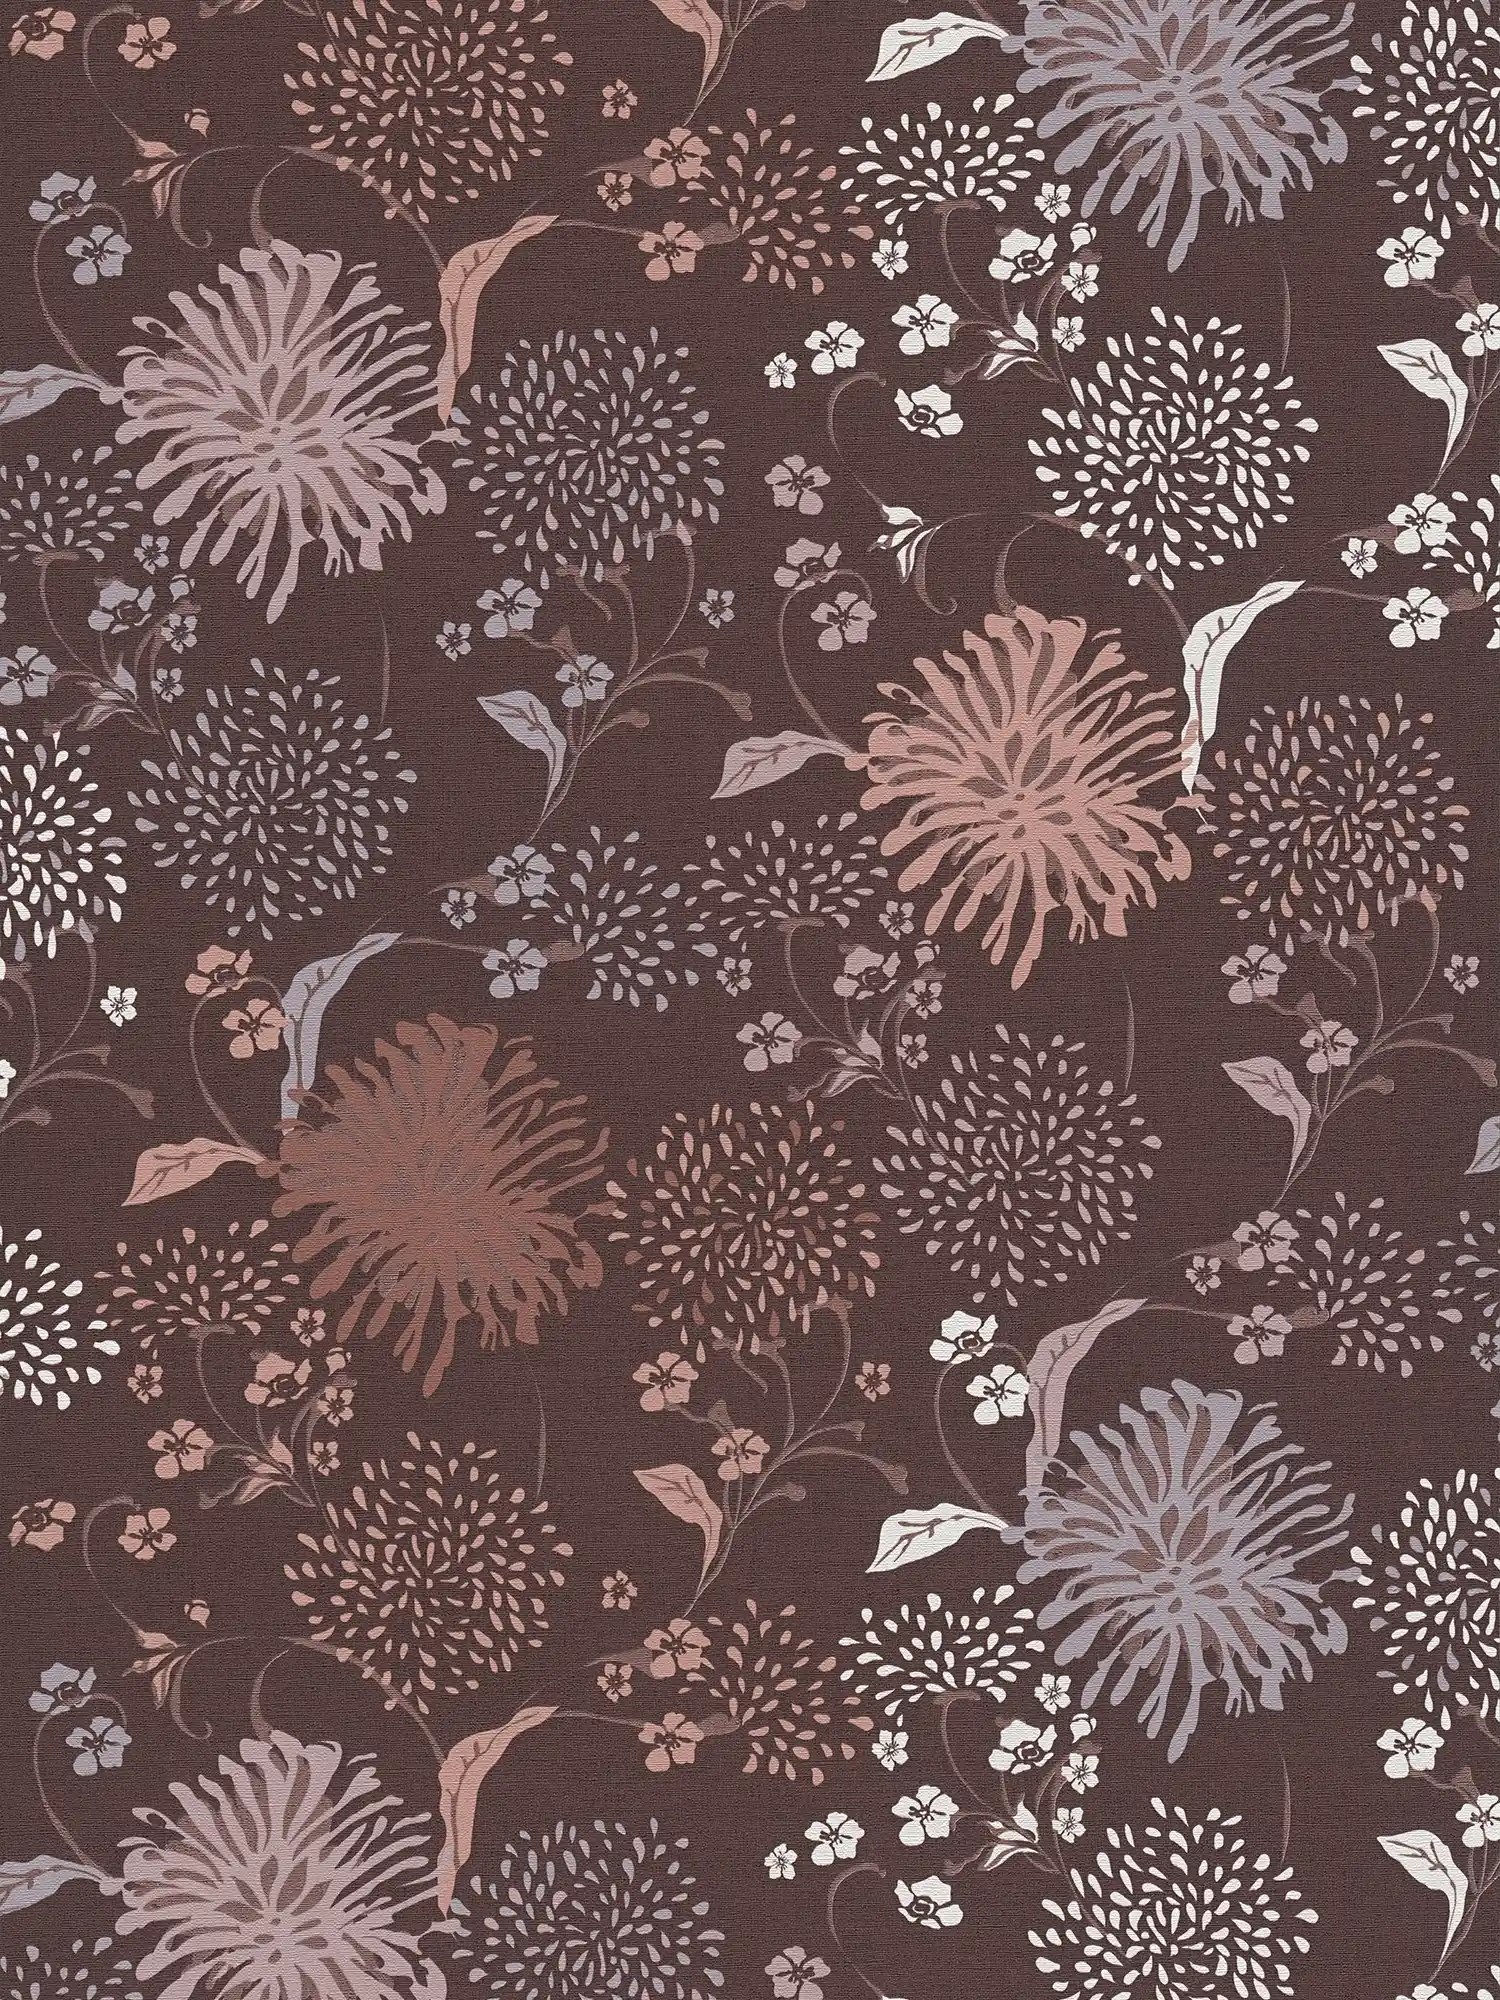 Blumentapete mit verspieltem Muster & Leinenoptik – Weinrot, Grau, Weiß
